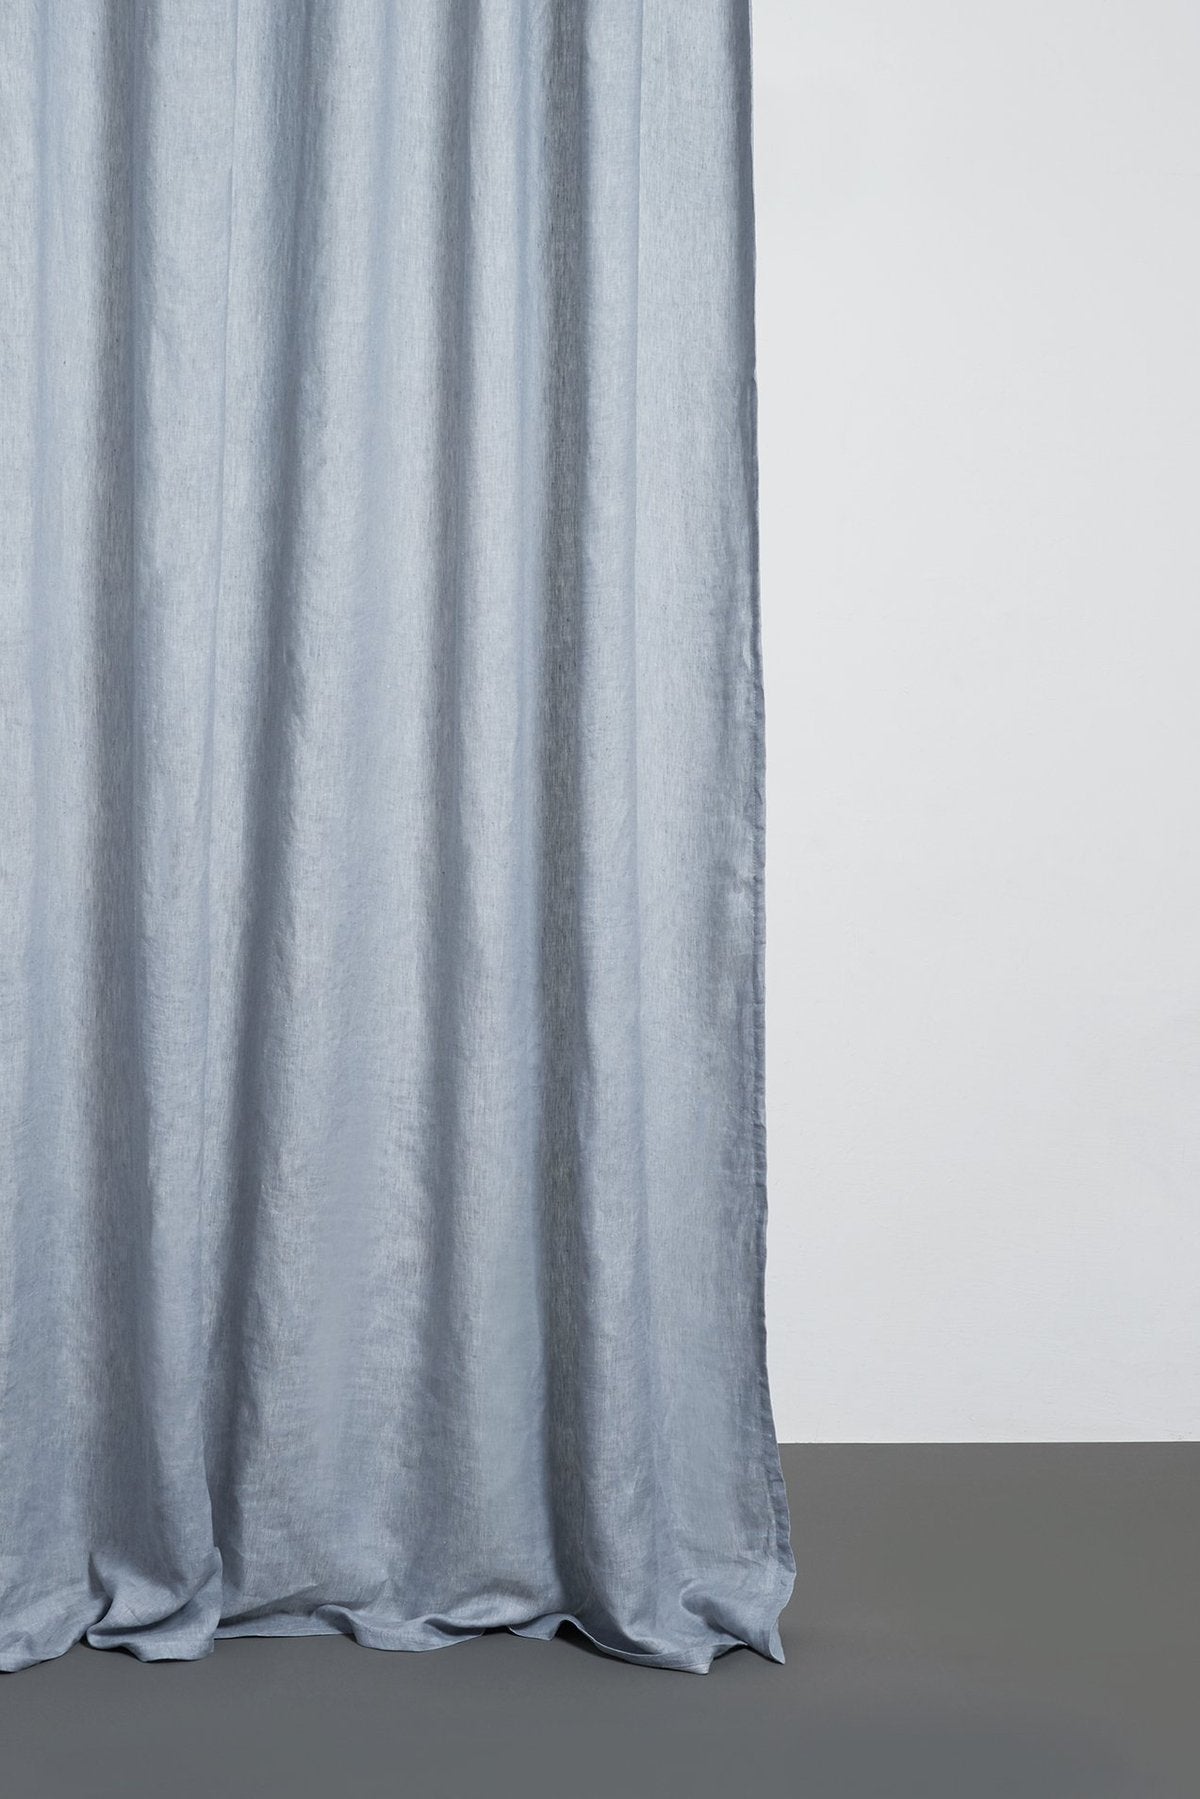 Two Tone Vorhang Stonewashed in Grau präsentiert im Onlineshop von KAQTU Design AG. Vorhang ist von ZigZagZurich